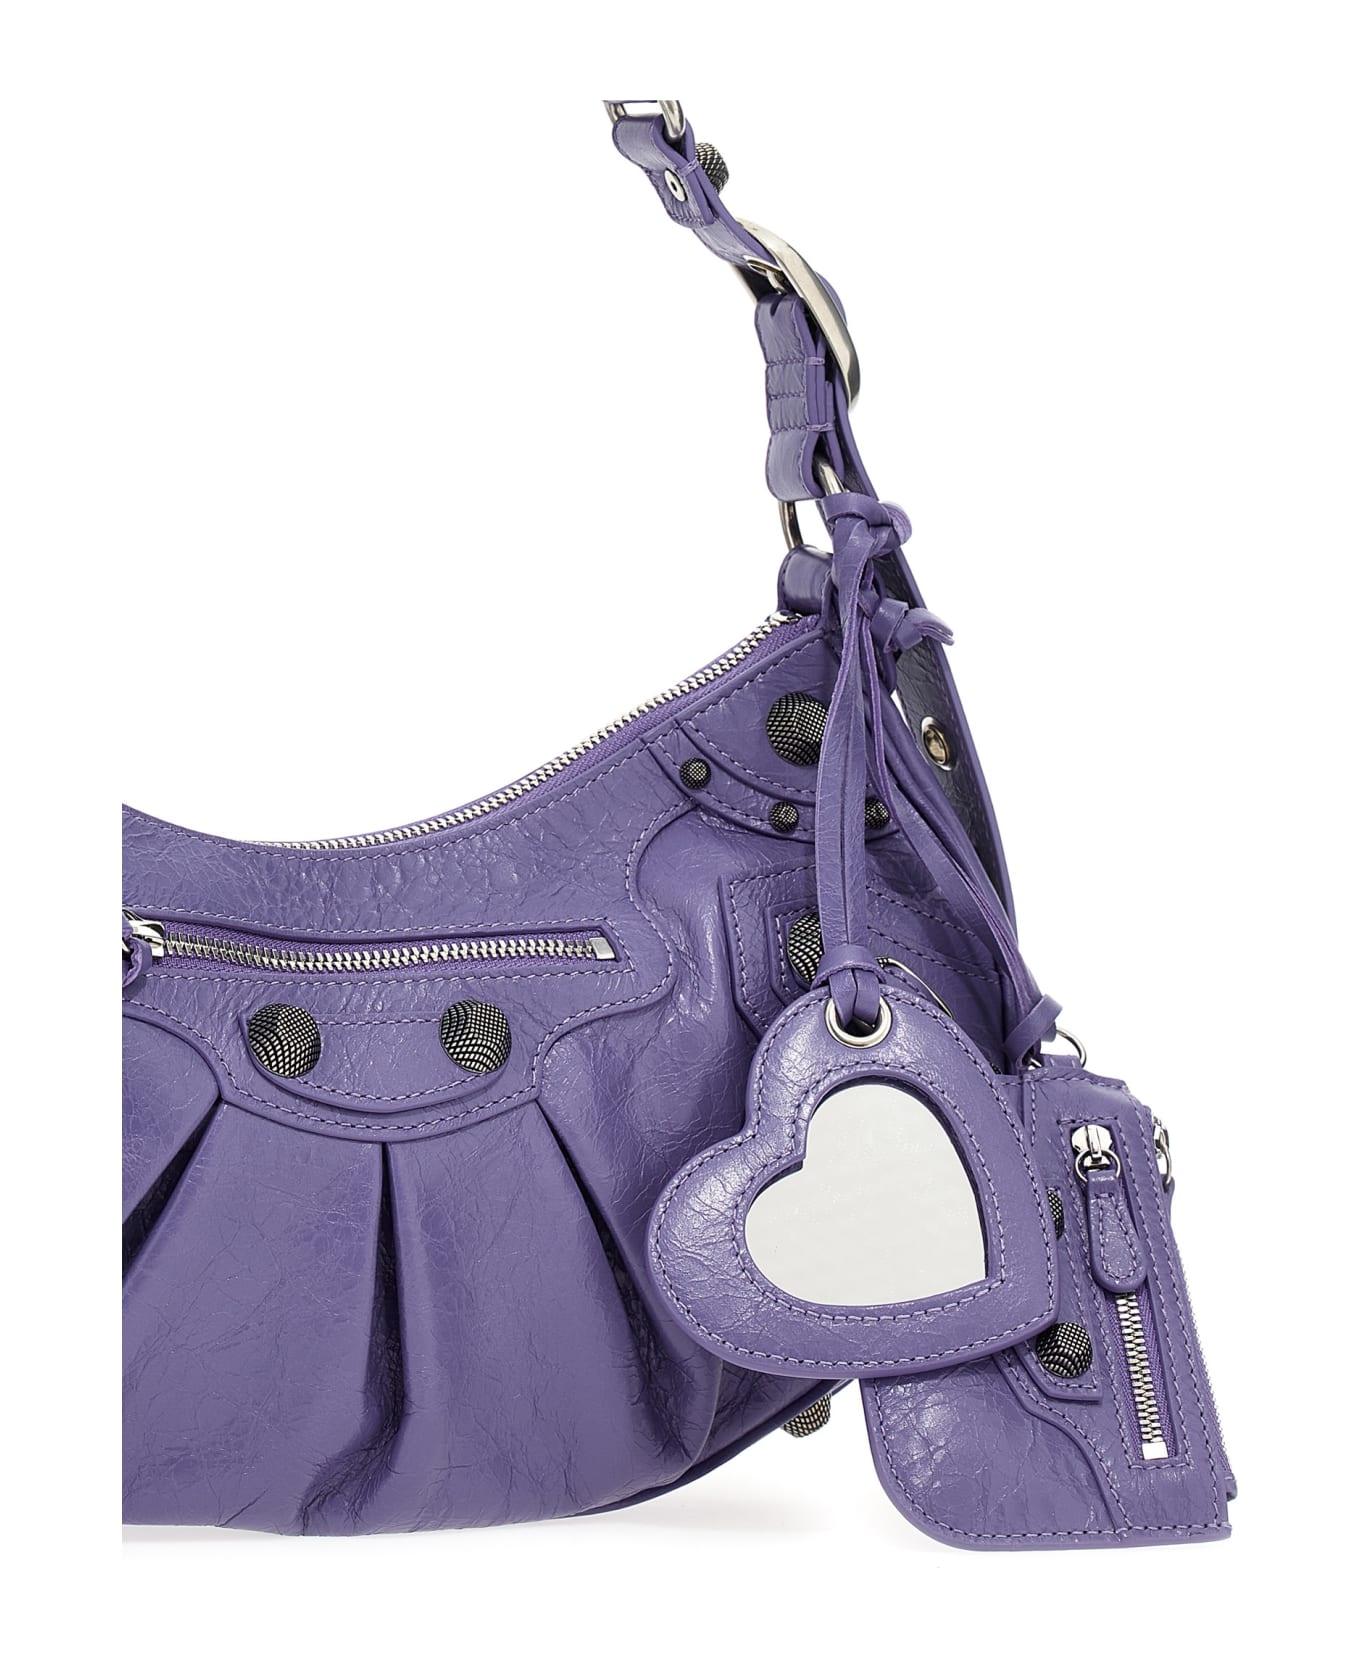 Balenciaga 671307/1vg9y 5407 - Purple